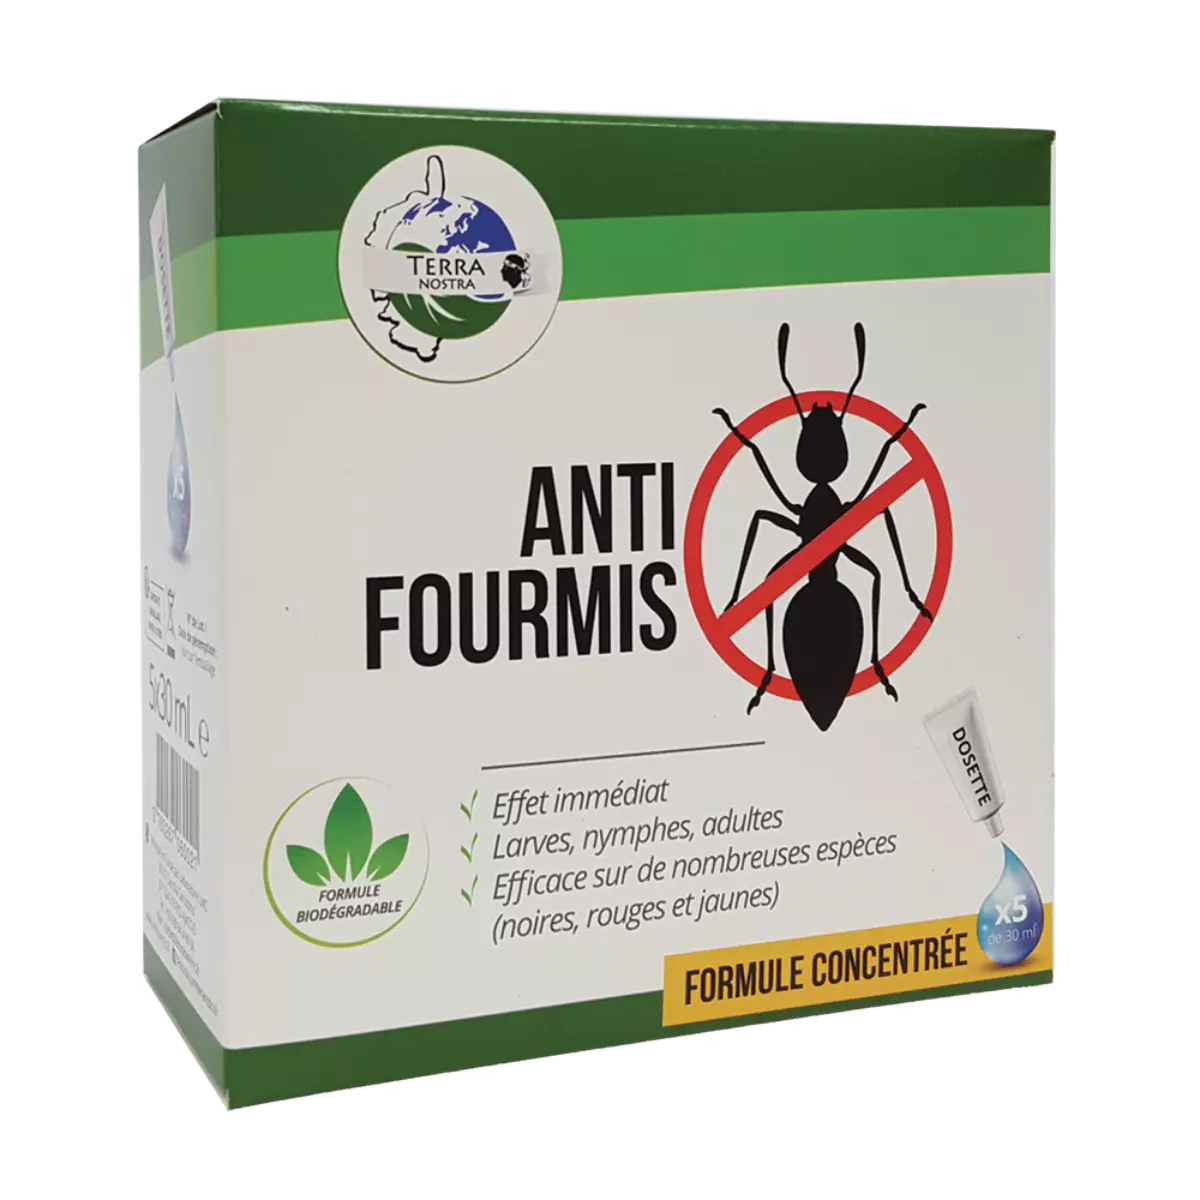 la boite d un produit commercial anti fourmis